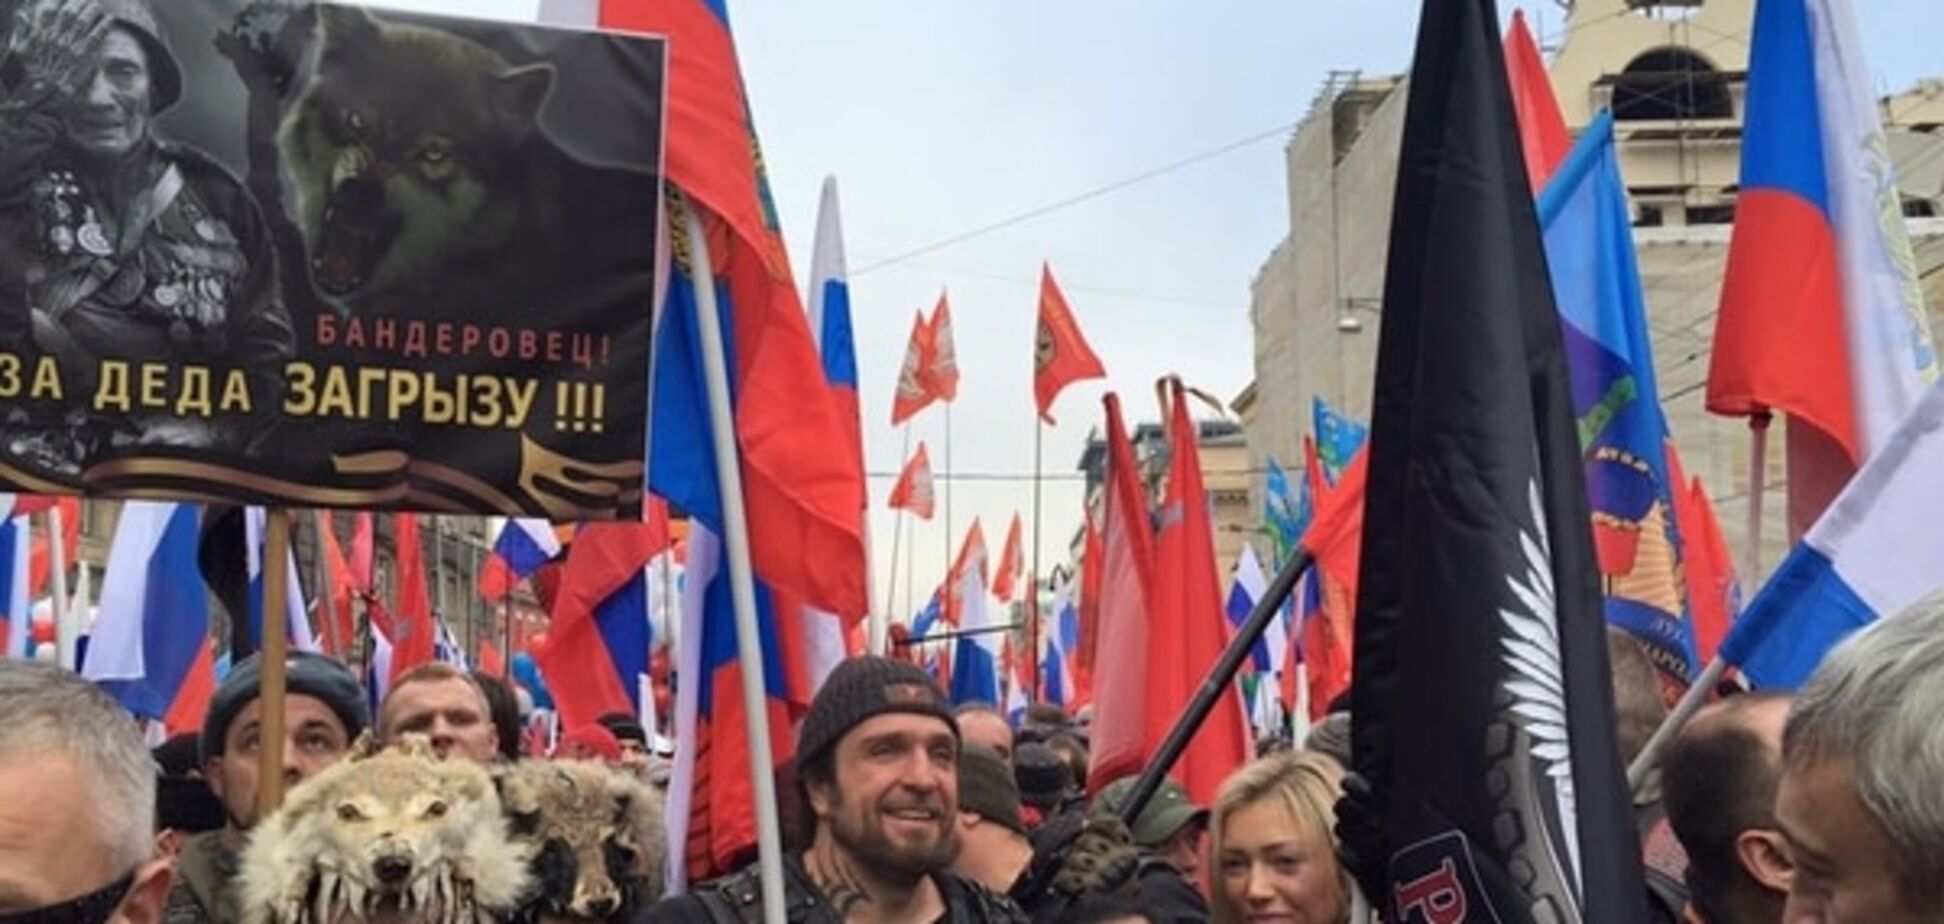 'Дно єдності': на мітингу в Москві обіцяли 'загризти бандерівців'